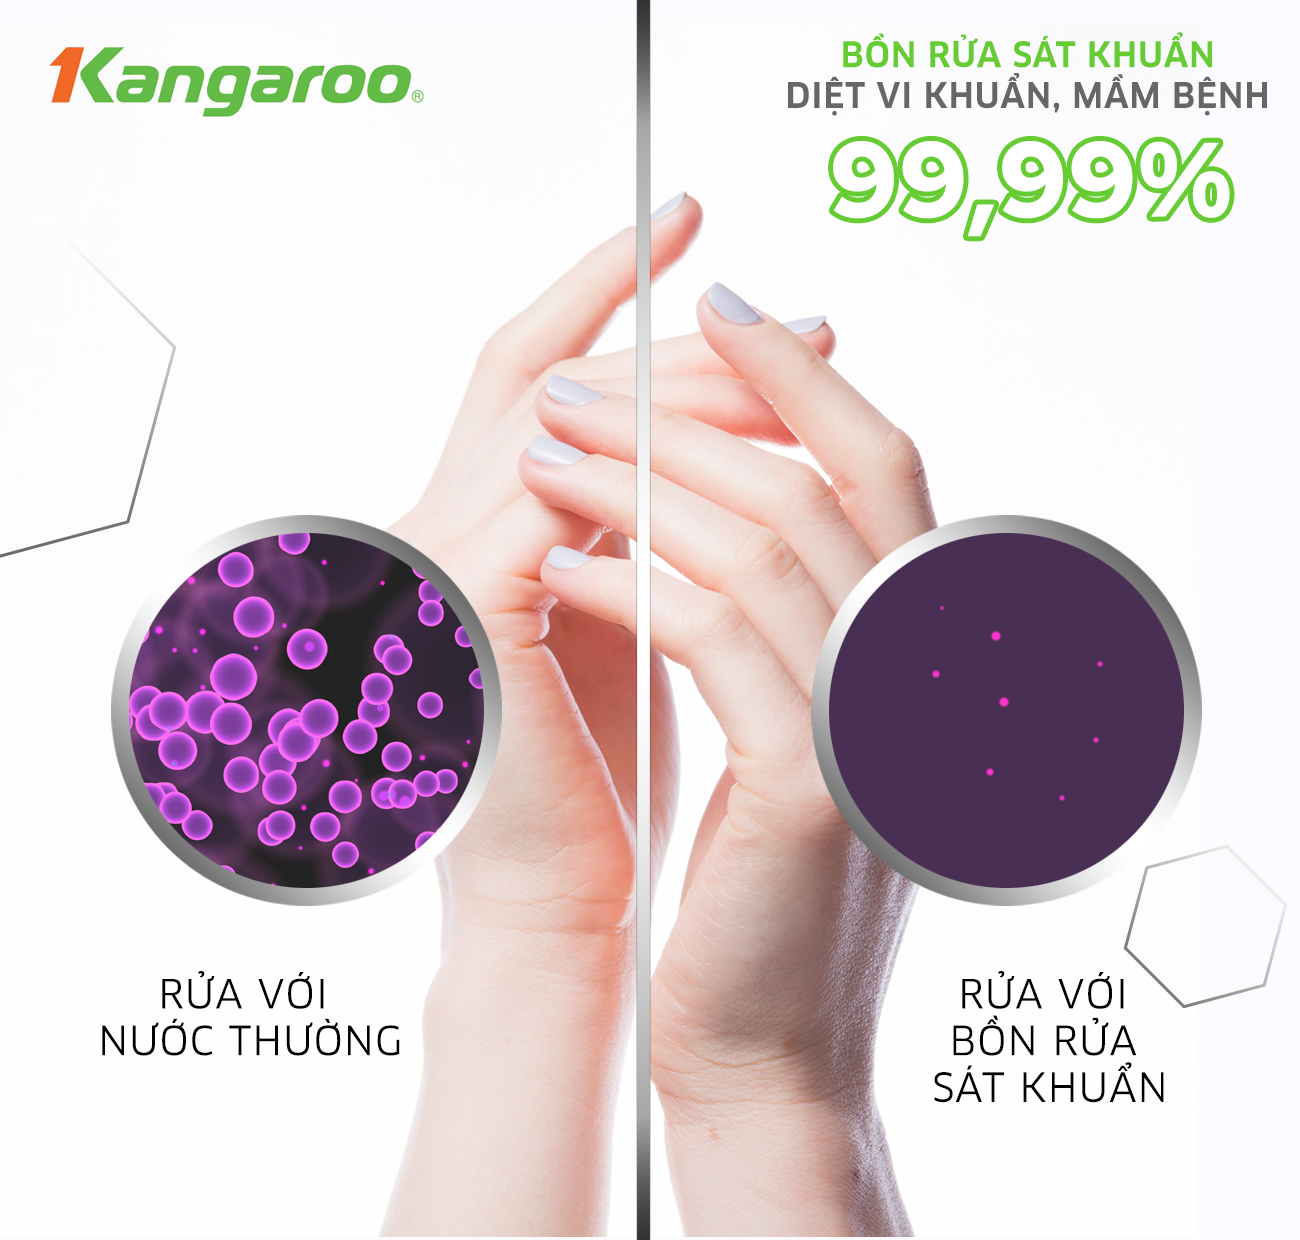 Bồn rửa tay sát khuẩn Kangaroo Diệt khuẩn vi khuẩn, mầm bệnh 99,99%